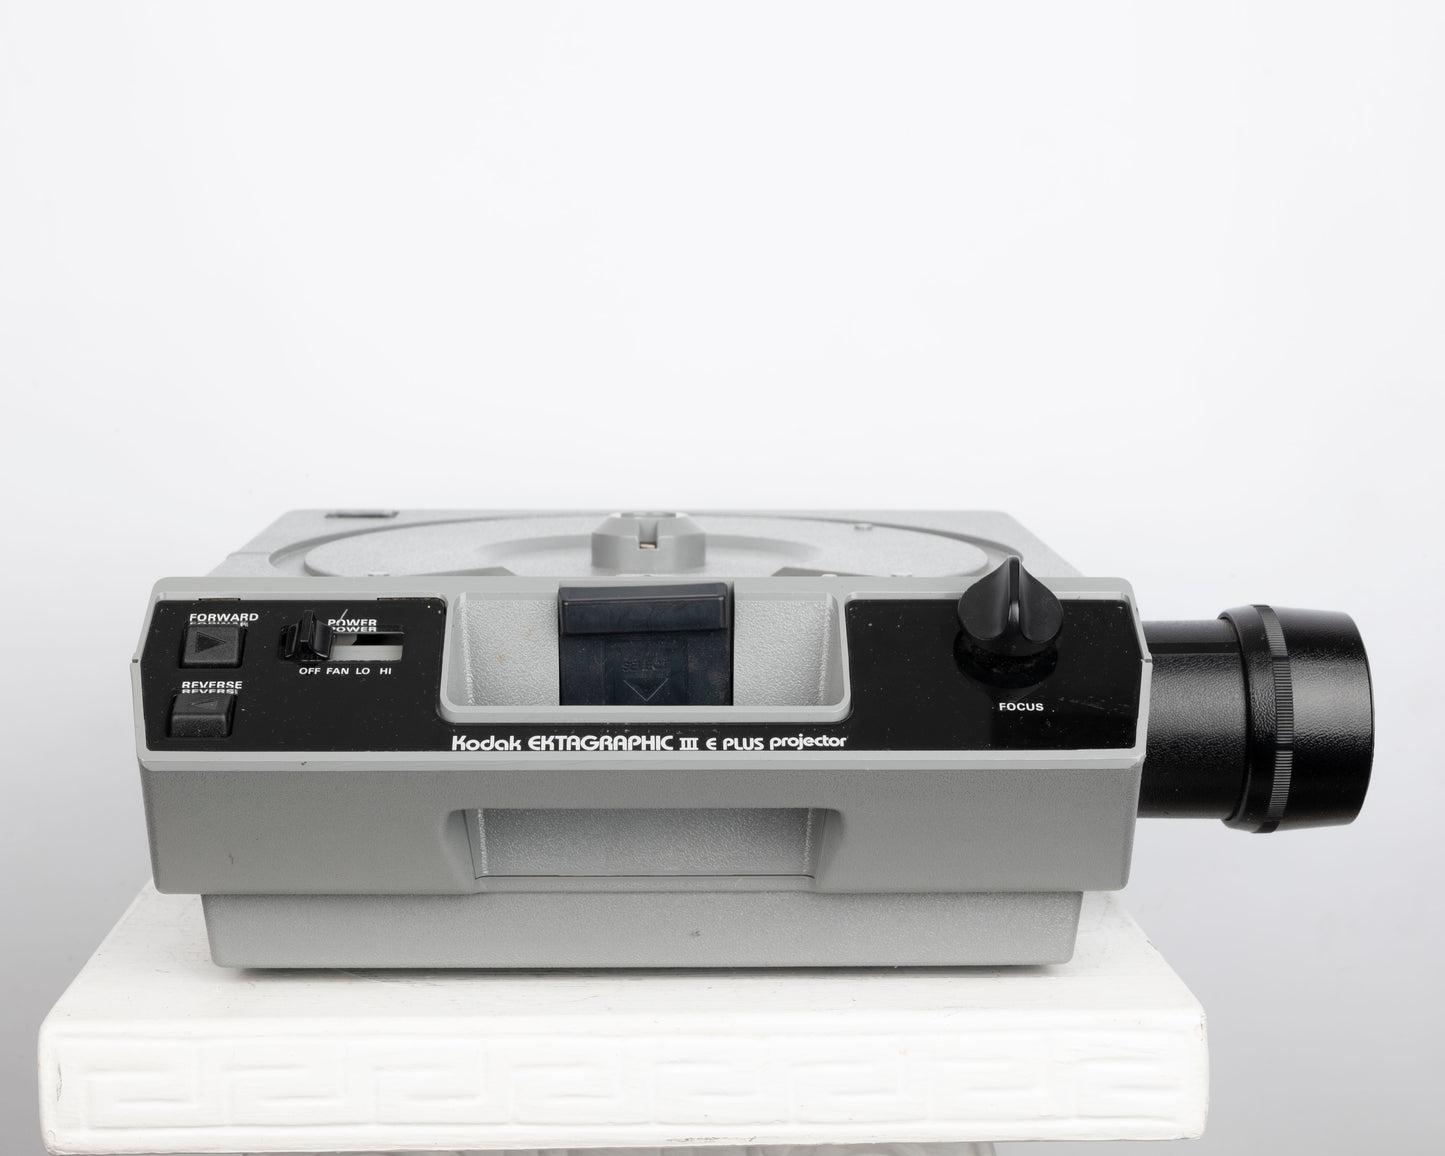 Kodak Ektagraphic III E Plus 35mm slide projector w/ Ektanar C 102-125mm f3.5 zoom lens